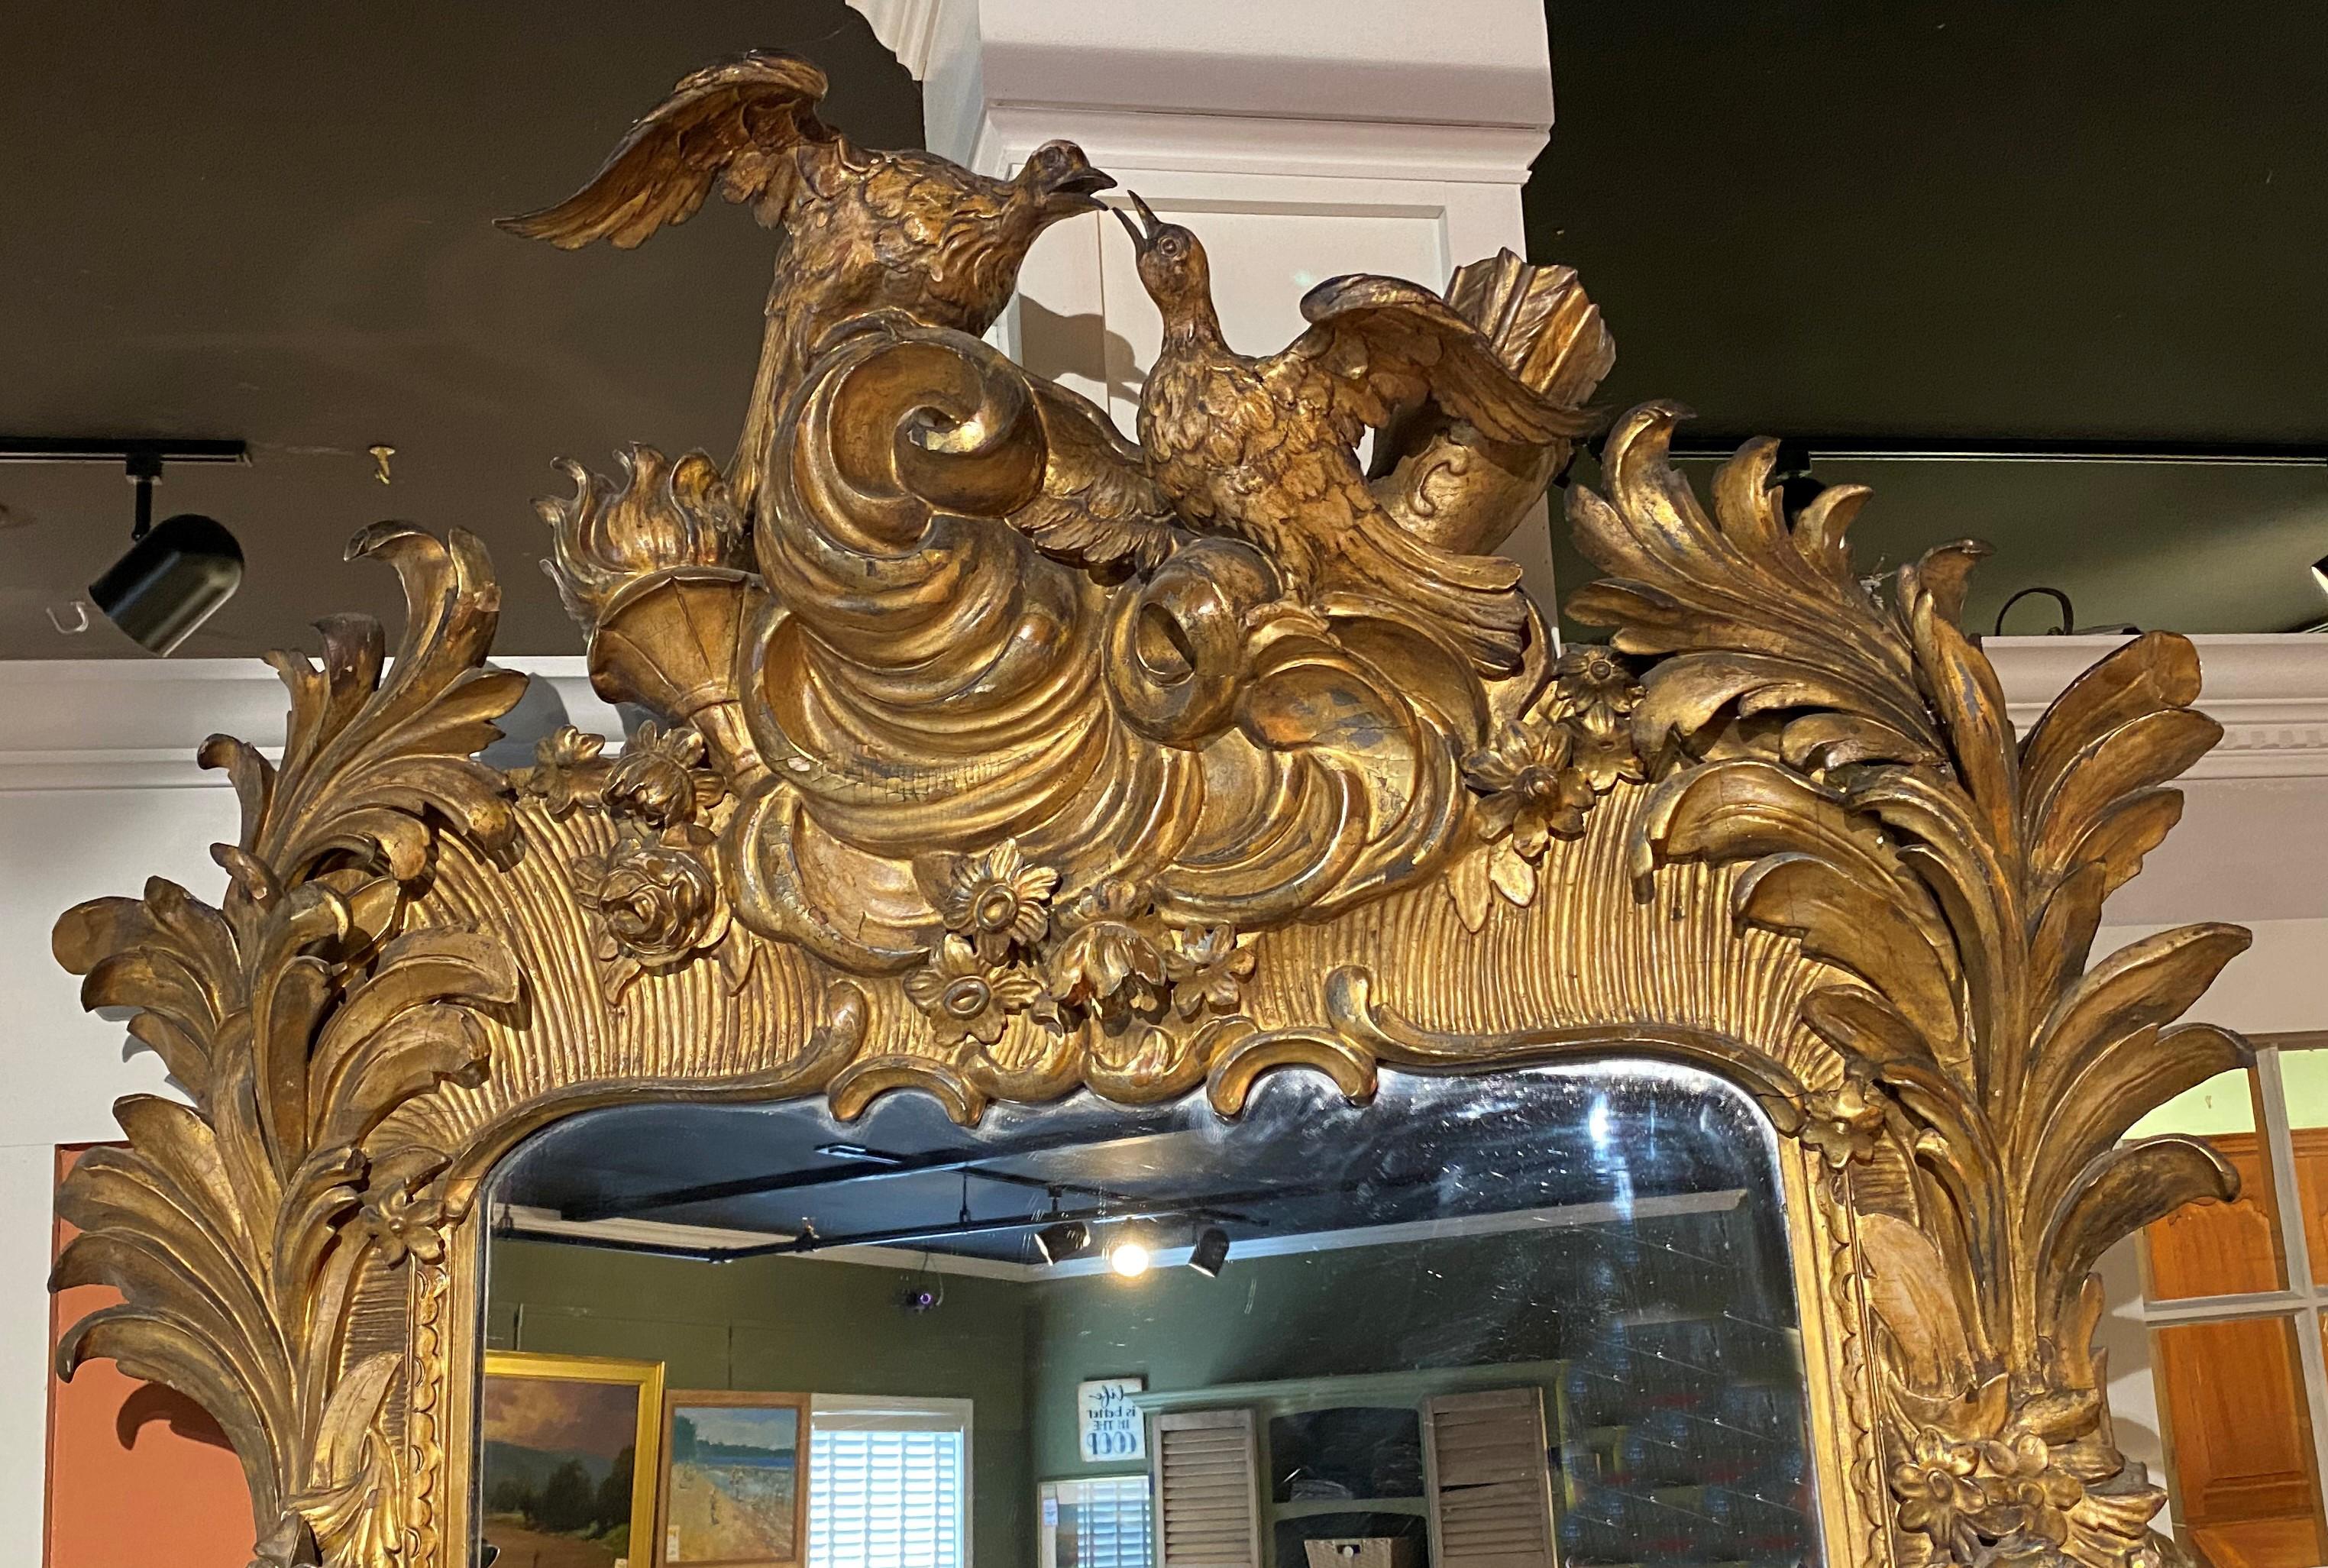 Un spectaculaire miroir rectangulaire Rococo en bois sculpté et doré avec un cadre exceptionnel sculpté de feuillage et une crête représentant deux oiseaux, un carquois avec des flèches, une torche à flamme, et de grands accents de volutes. Il est